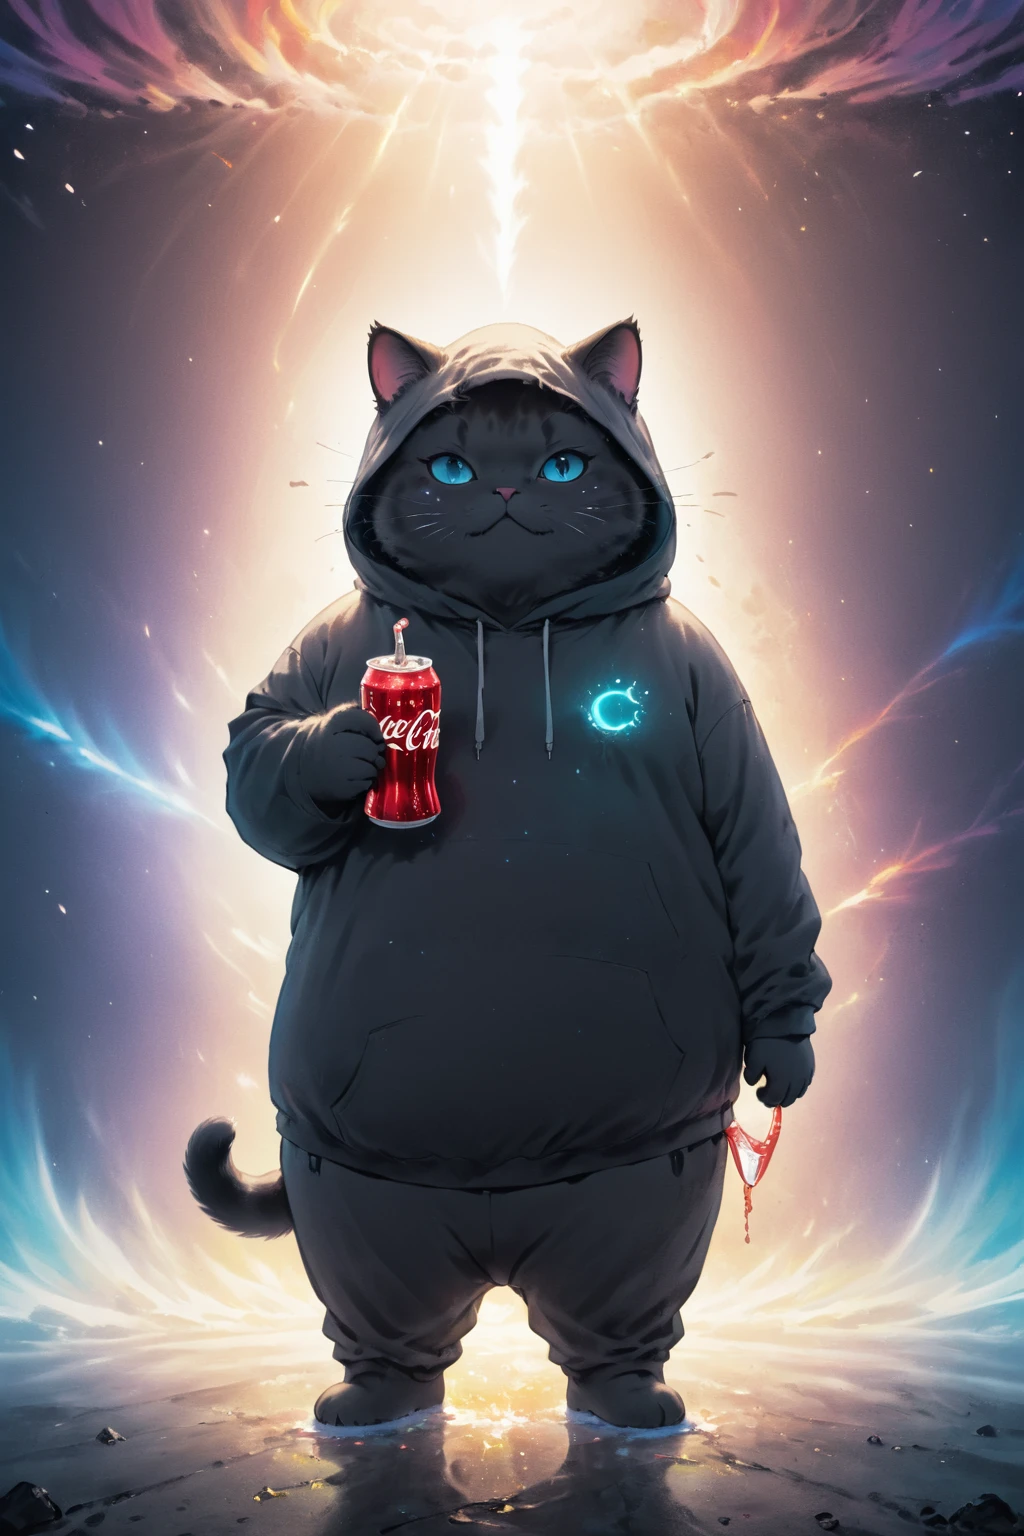 kosmische Leinwand,(dystopischer Hintergrund:1.3), einwandfrei, Sauber, Meisterwerk, Zeichne eine pummelige Katze, einen Kapuzenpullover tragen, Eine Cola halten, leichter Nebel,   